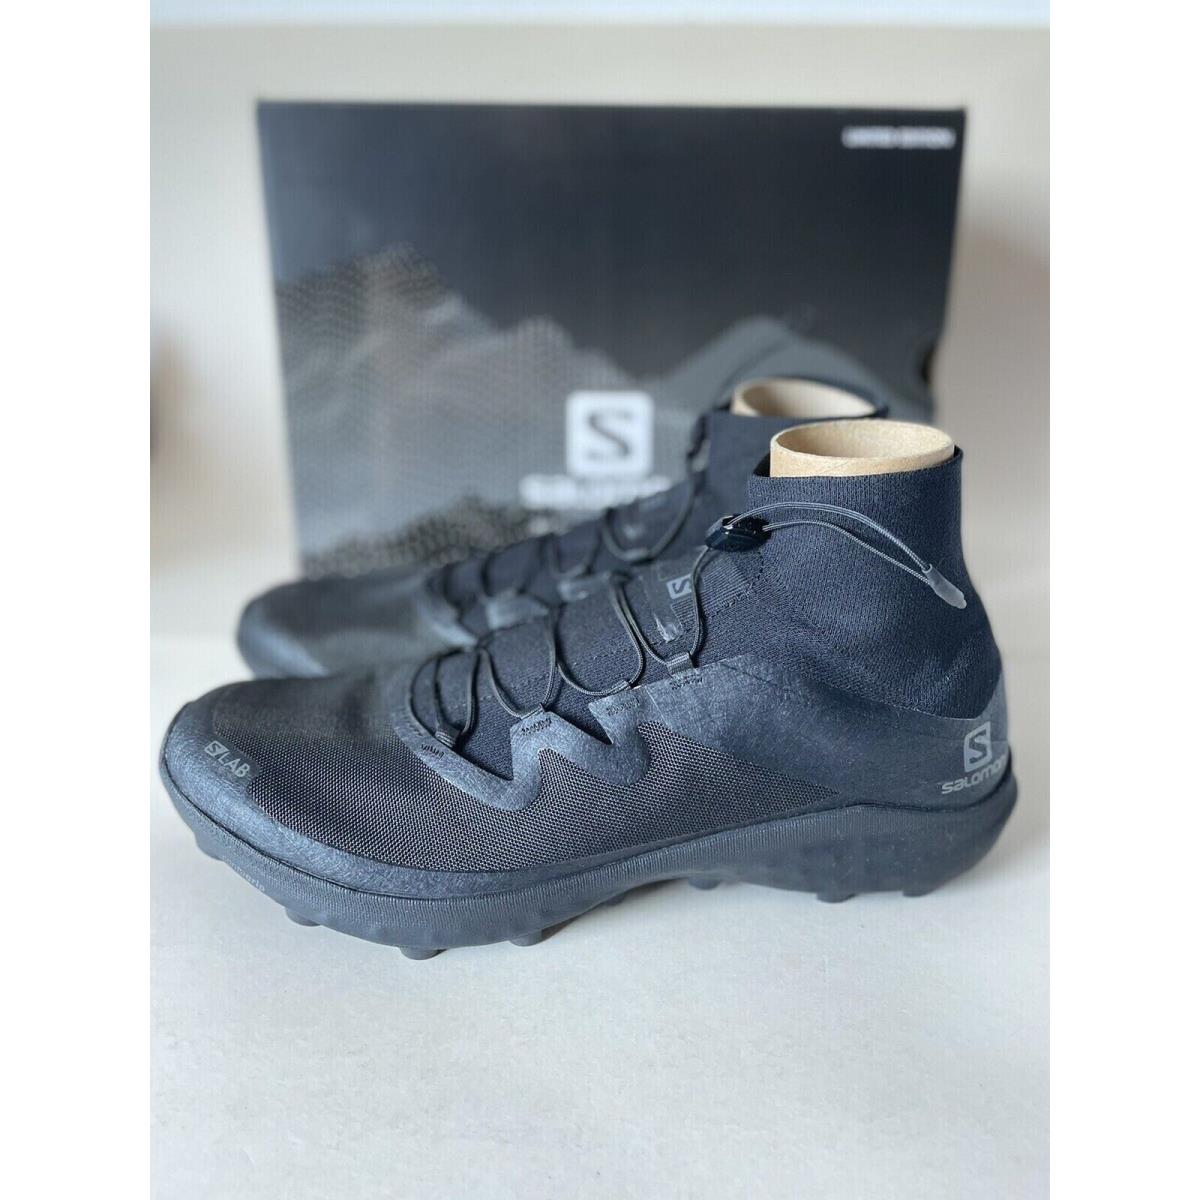 Salomon shoes  - Black 5